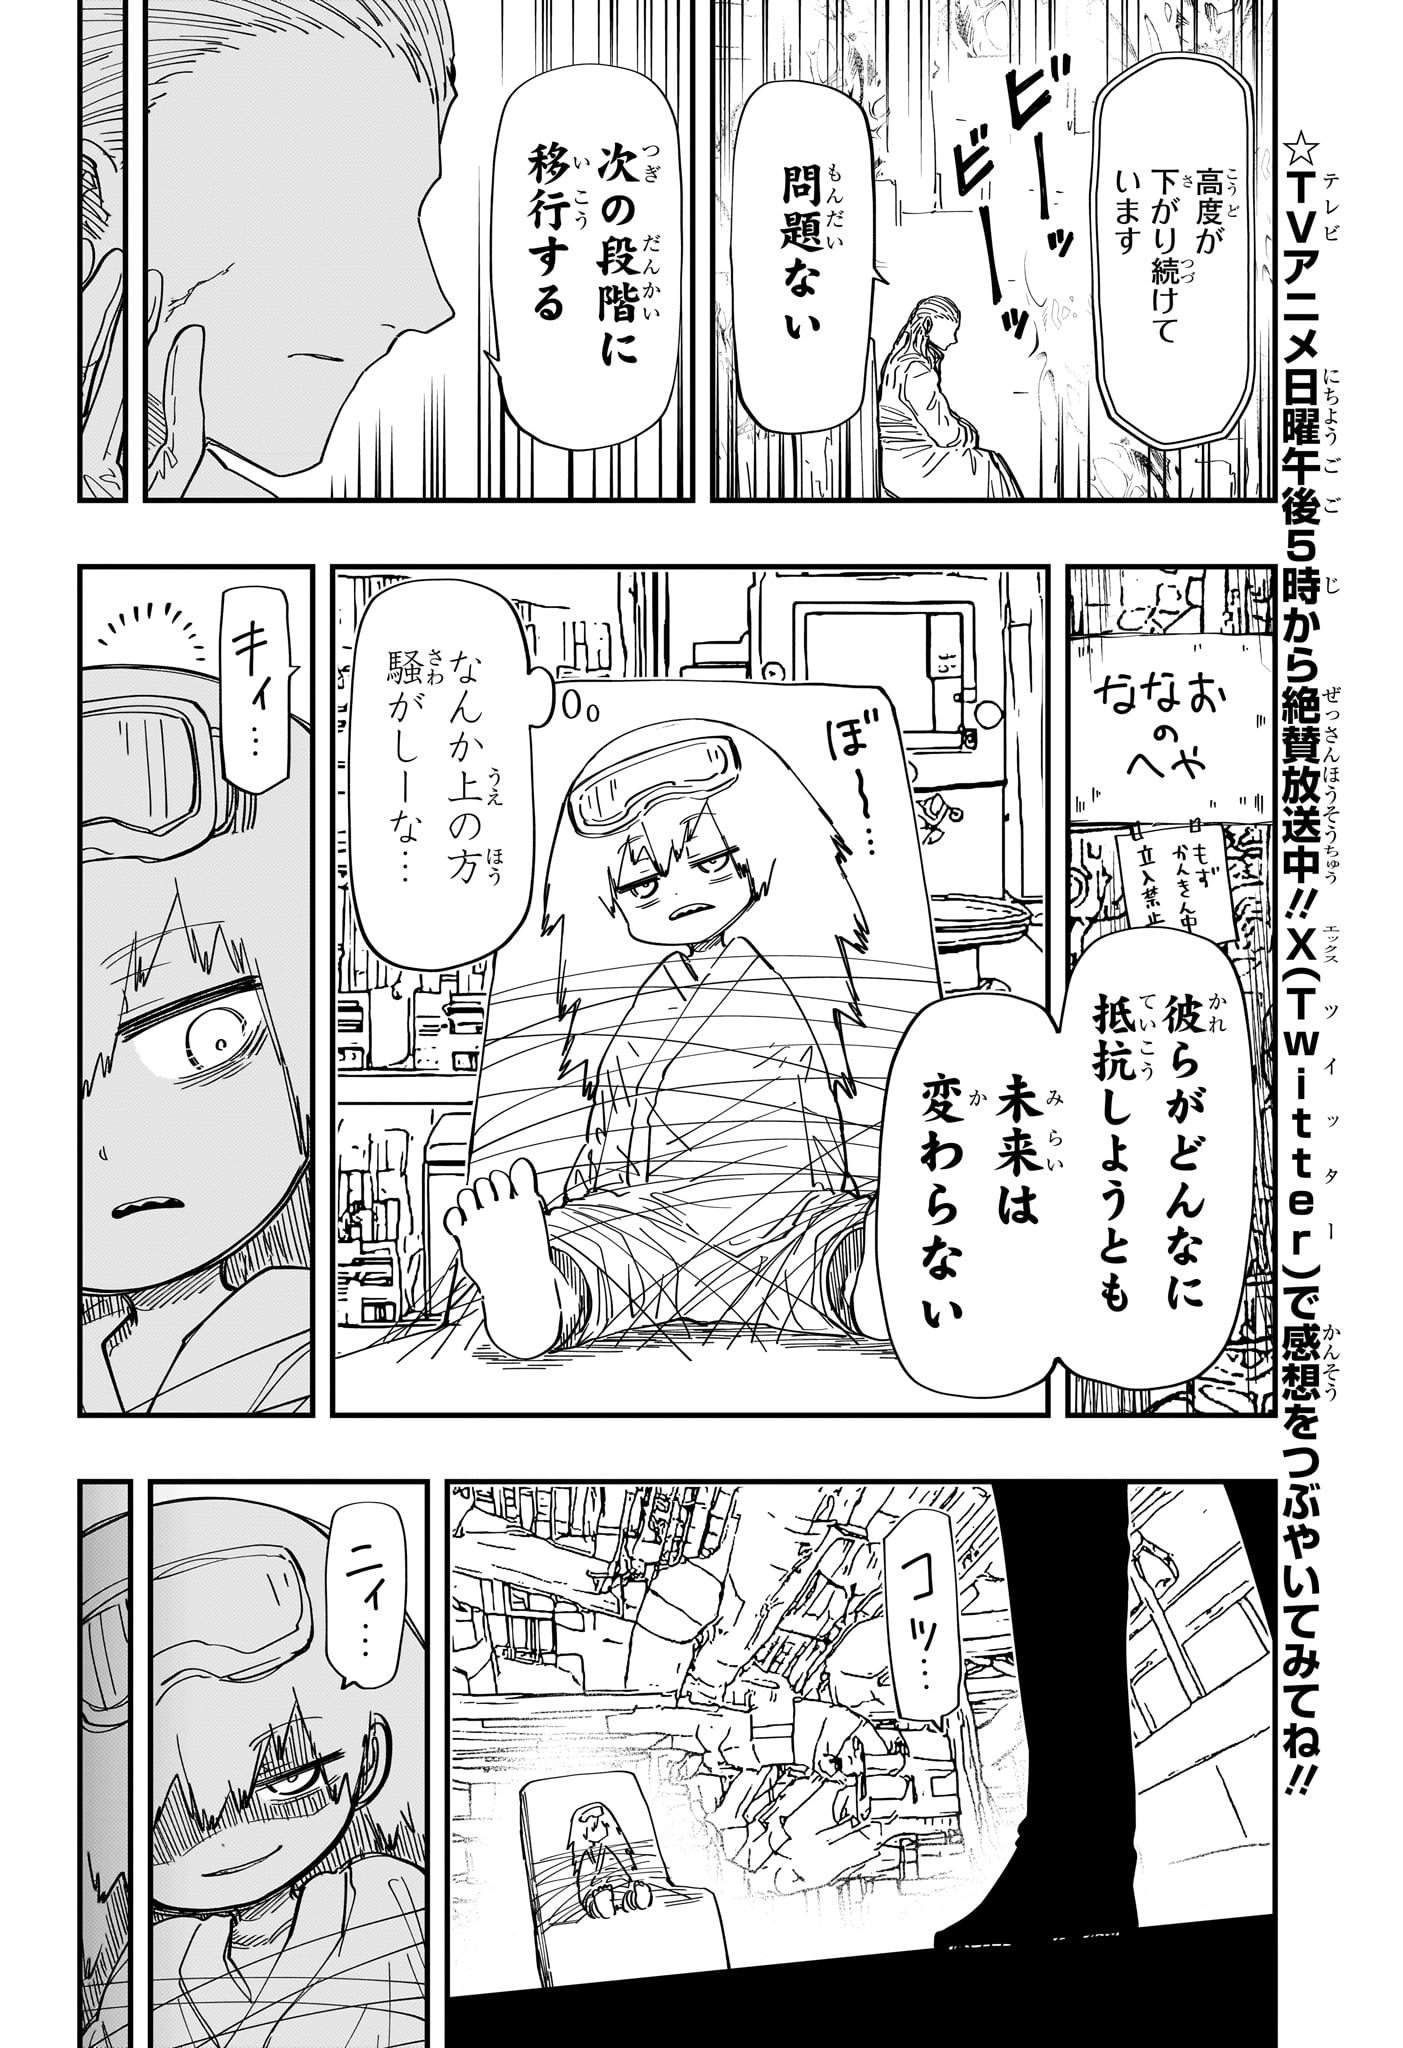 Yozakura-san Chi no Daisakusen - Chapter 226 - Page 12